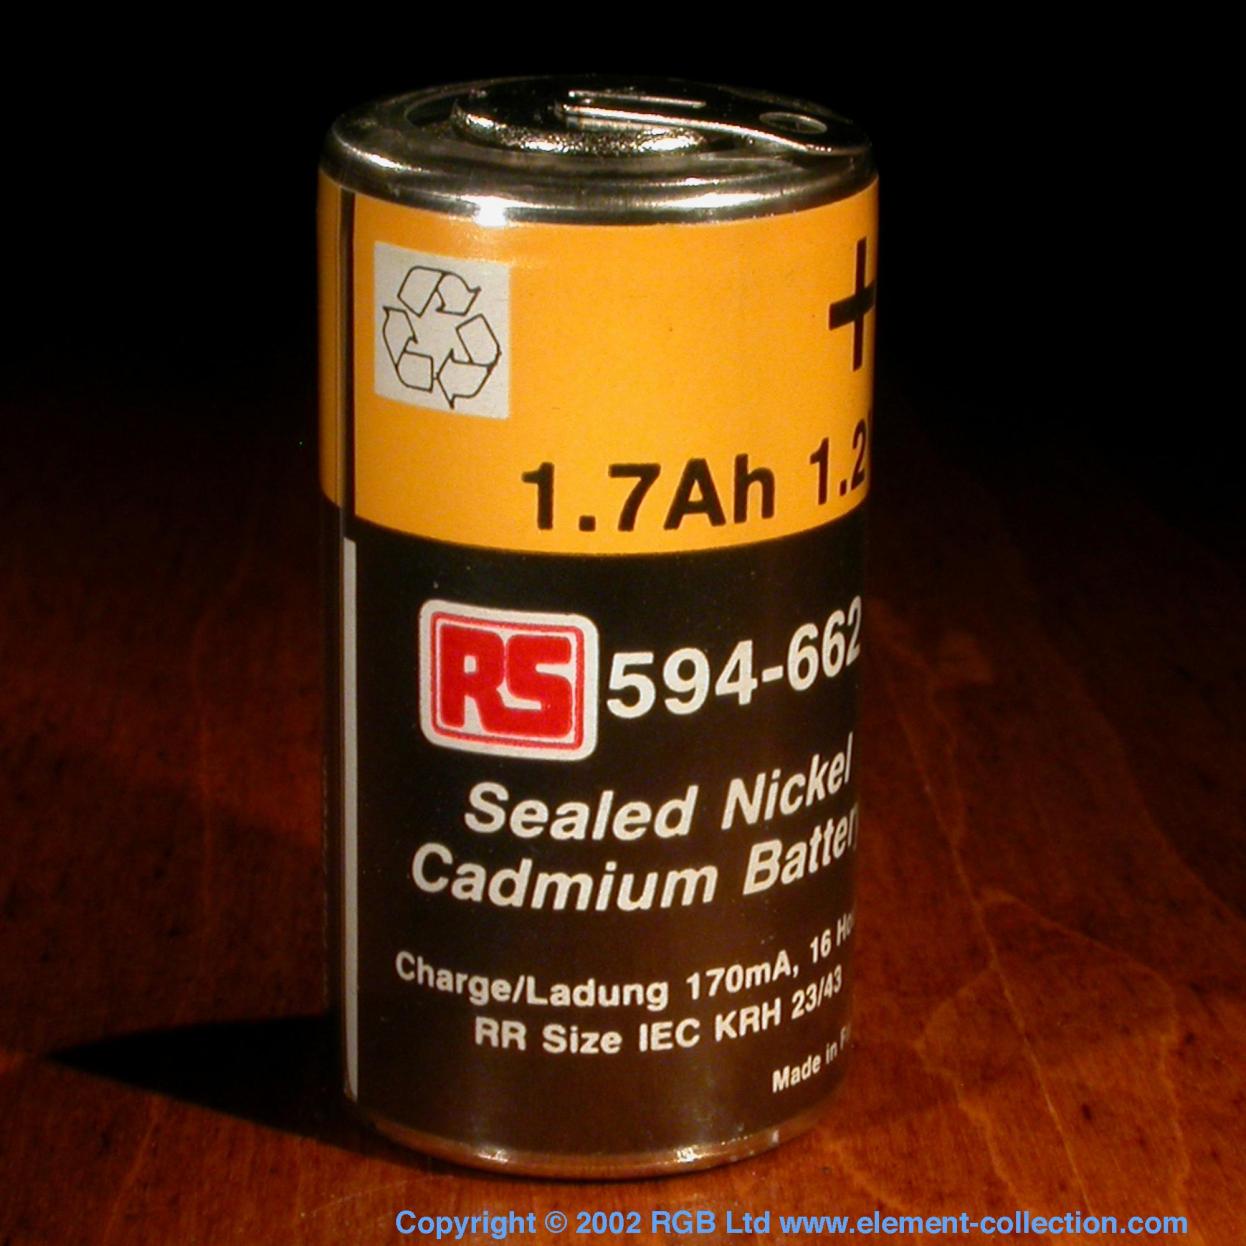 Cadmium Nickel-Cadmium (NiCad) rechargeable battery